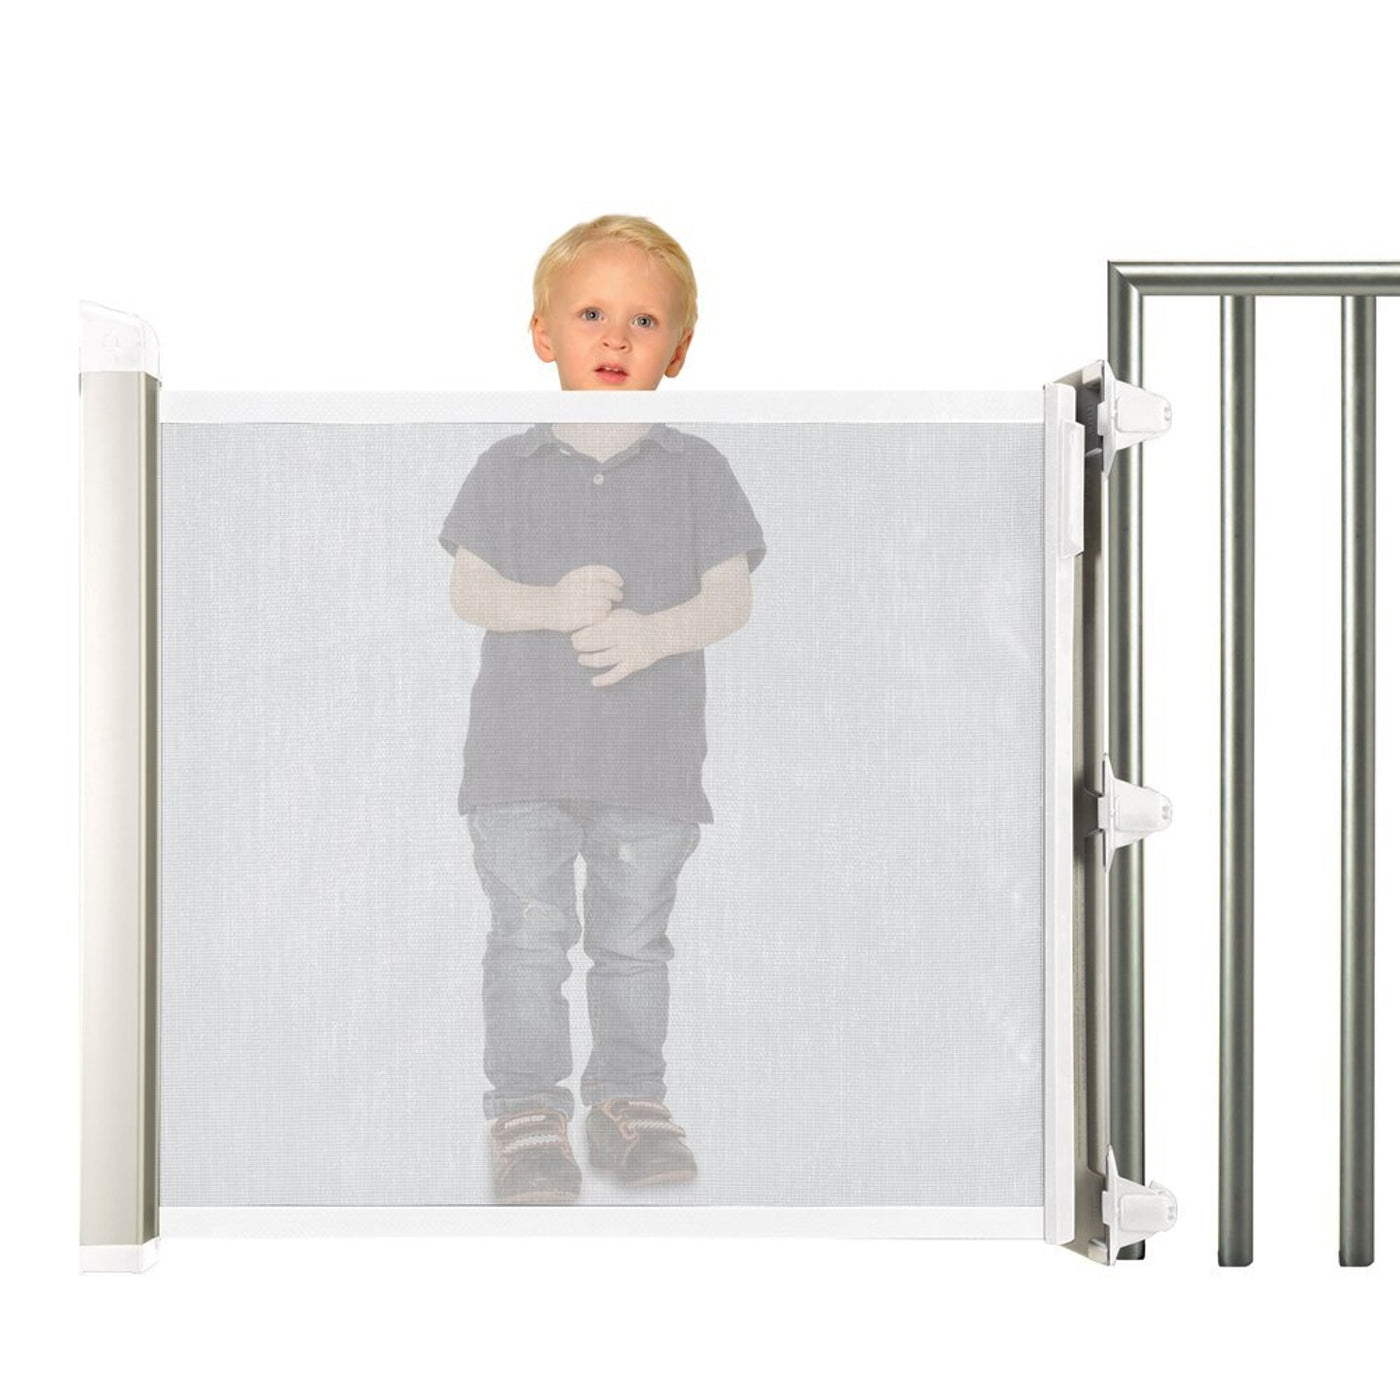 Barrera de seguridad para niños Kiddy Guard Avant